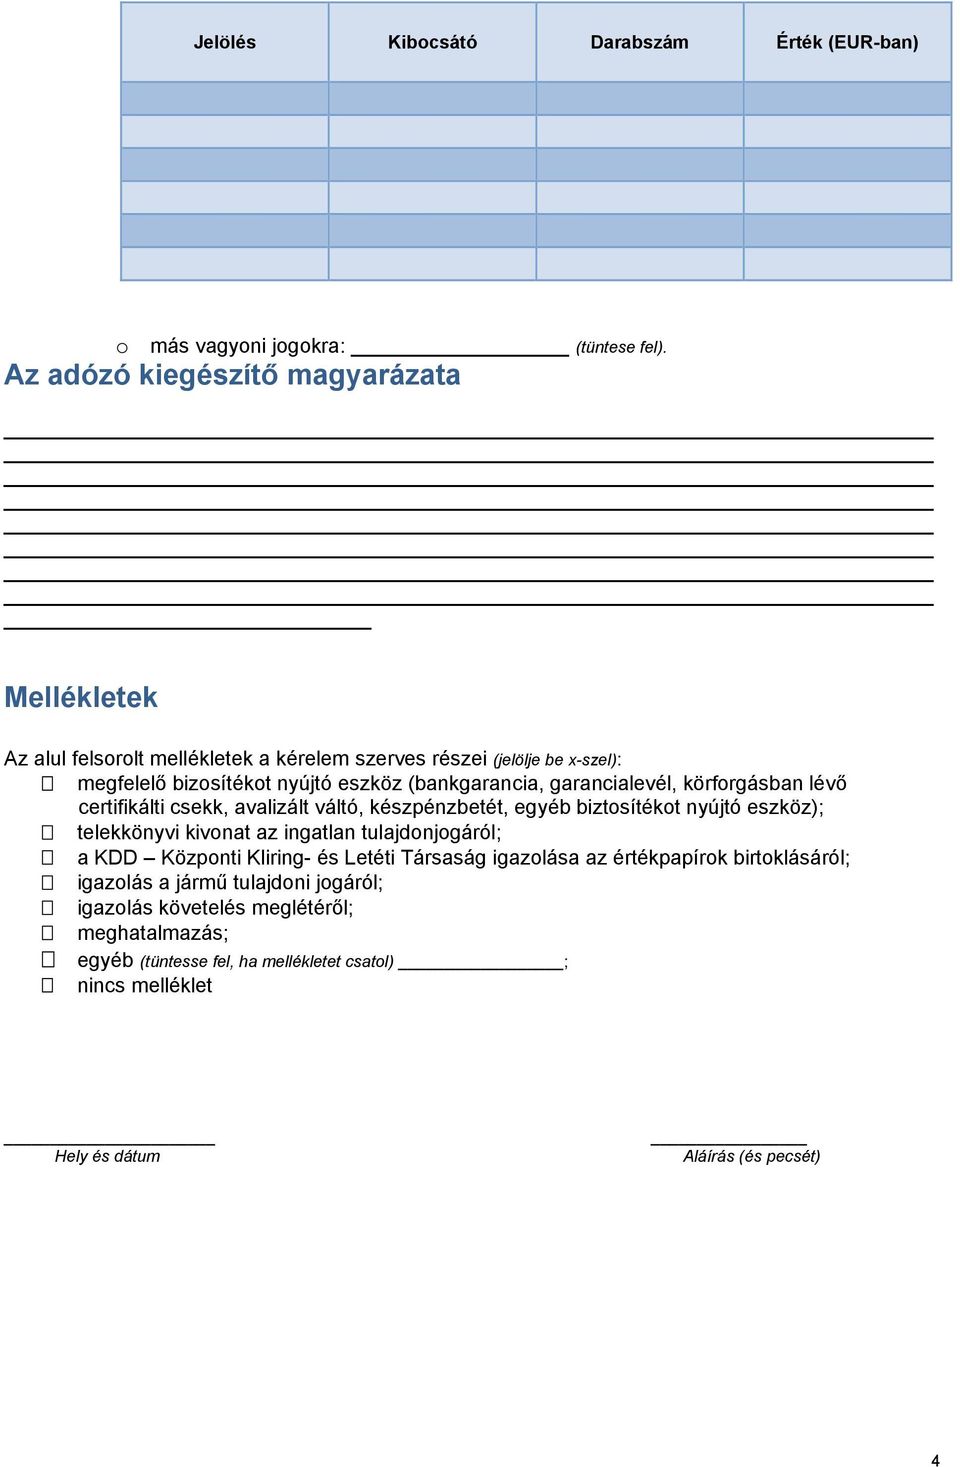 Halasztó hatályú illetve részletre történő adófizetés iránti kérelem  biztosítékkal - PDF Free Download